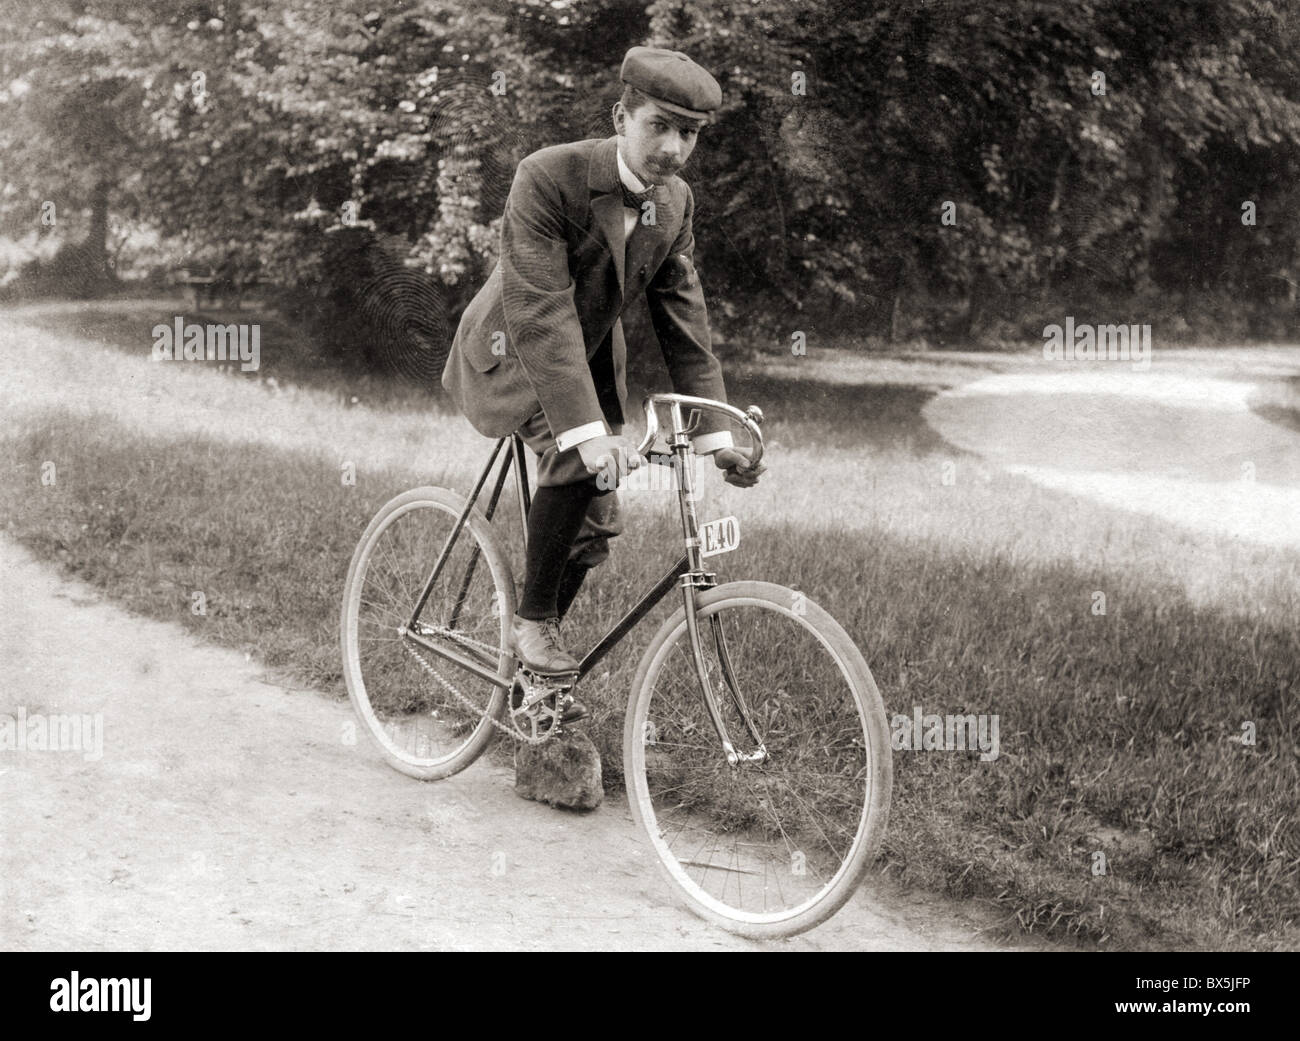 Transport/Transport, Fahrrad, junger Mann auf dem Fahrrad, um 1900,  zusätzliche-Rechte-Clearences-nicht vorhanden Stockfotografie - Alamy